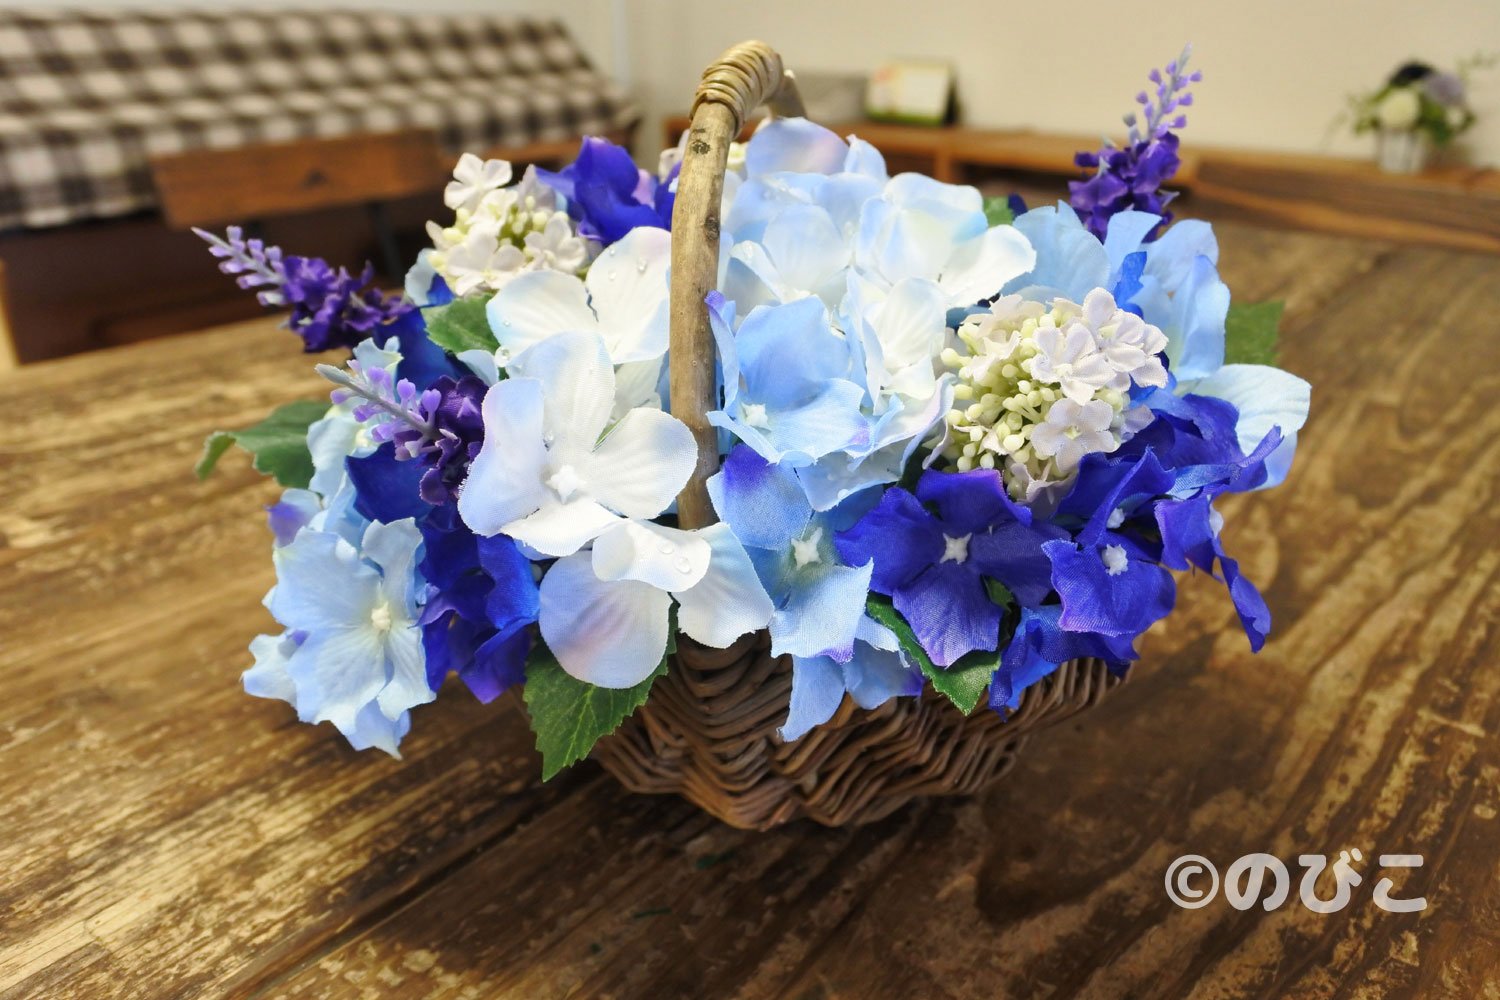 イラストレーター のびこ Ar Twitter 梅雨をテーマに造花アレンジメントを作ってみました カゴはナチュラルキッチン アンド あじさいと濃い紫のお花はダイソー 薄紫の小さなお花のは確かセリアの 造花 アーティフィシャルフラワー フラワーアレンジメント